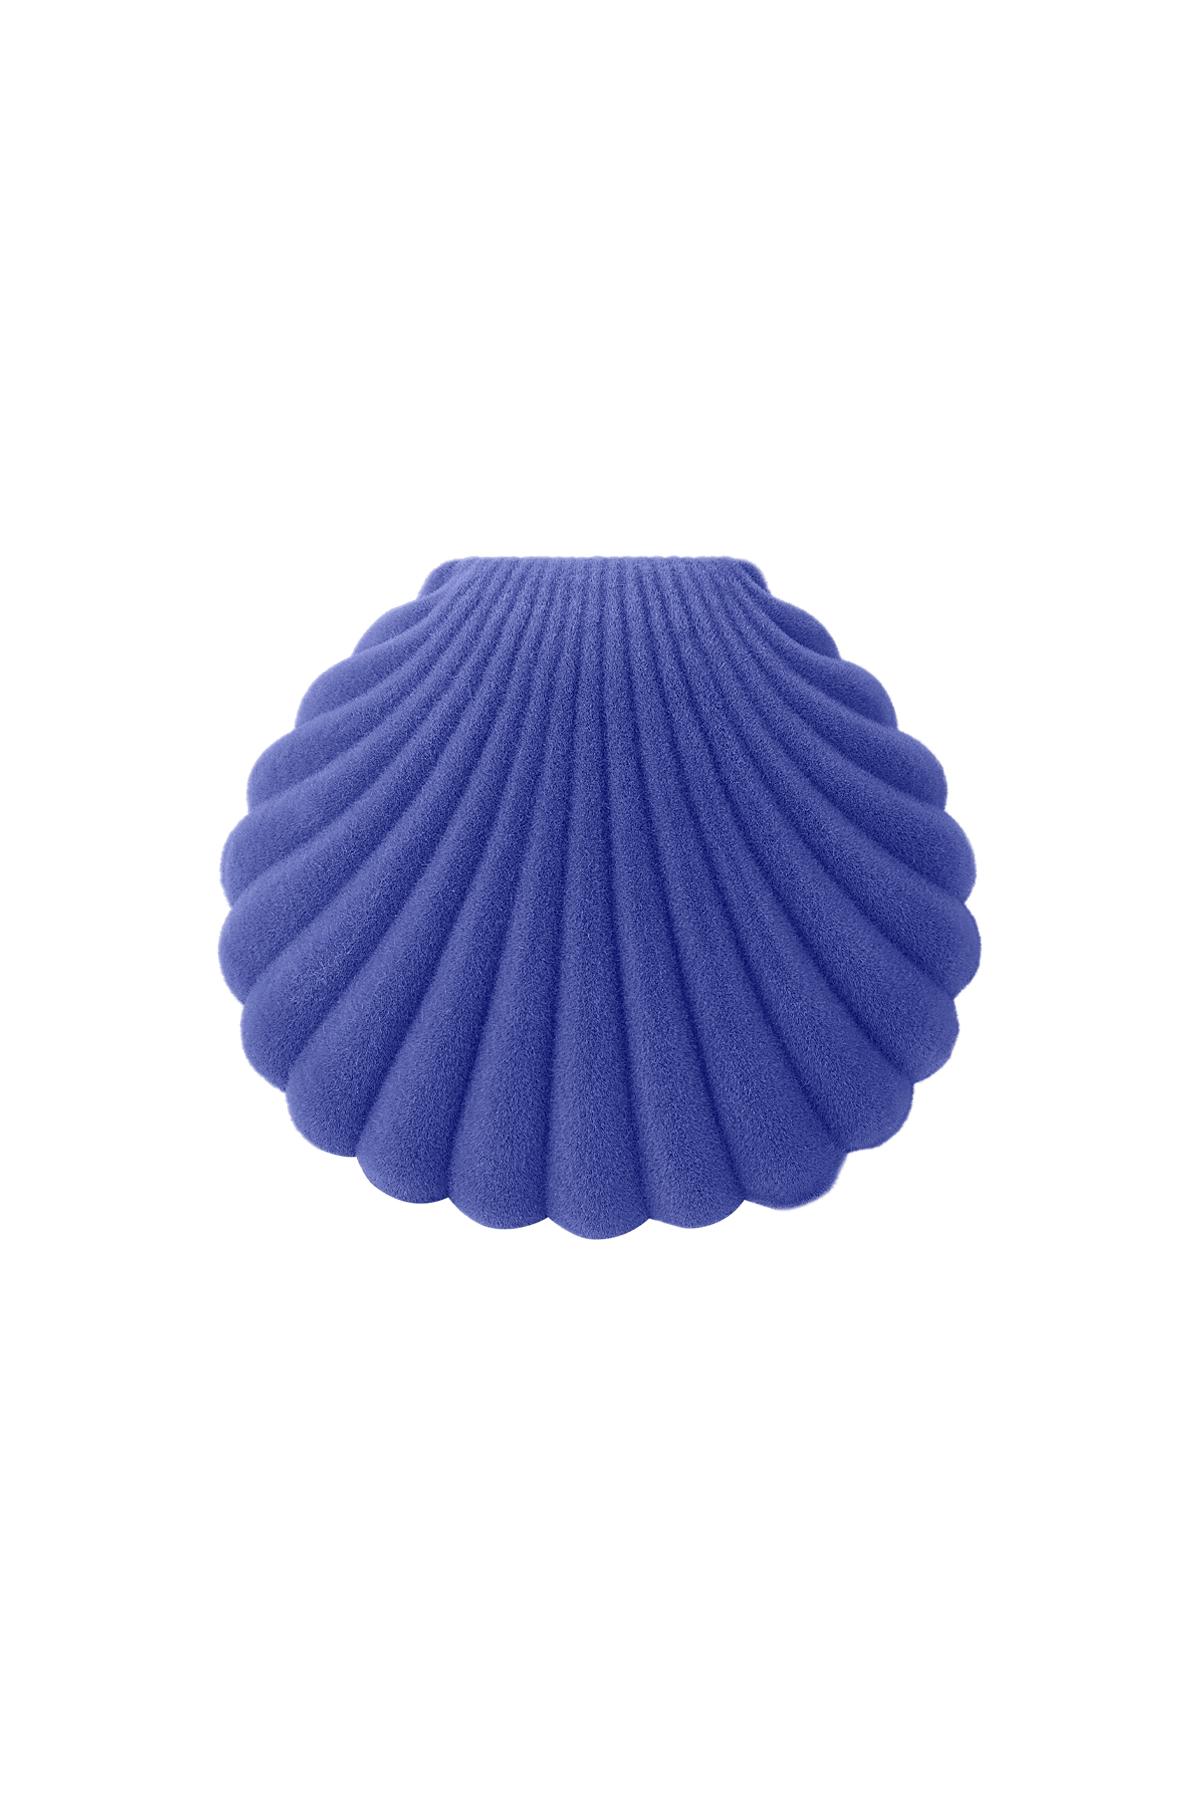 Shell Schmuckschatulle Blau